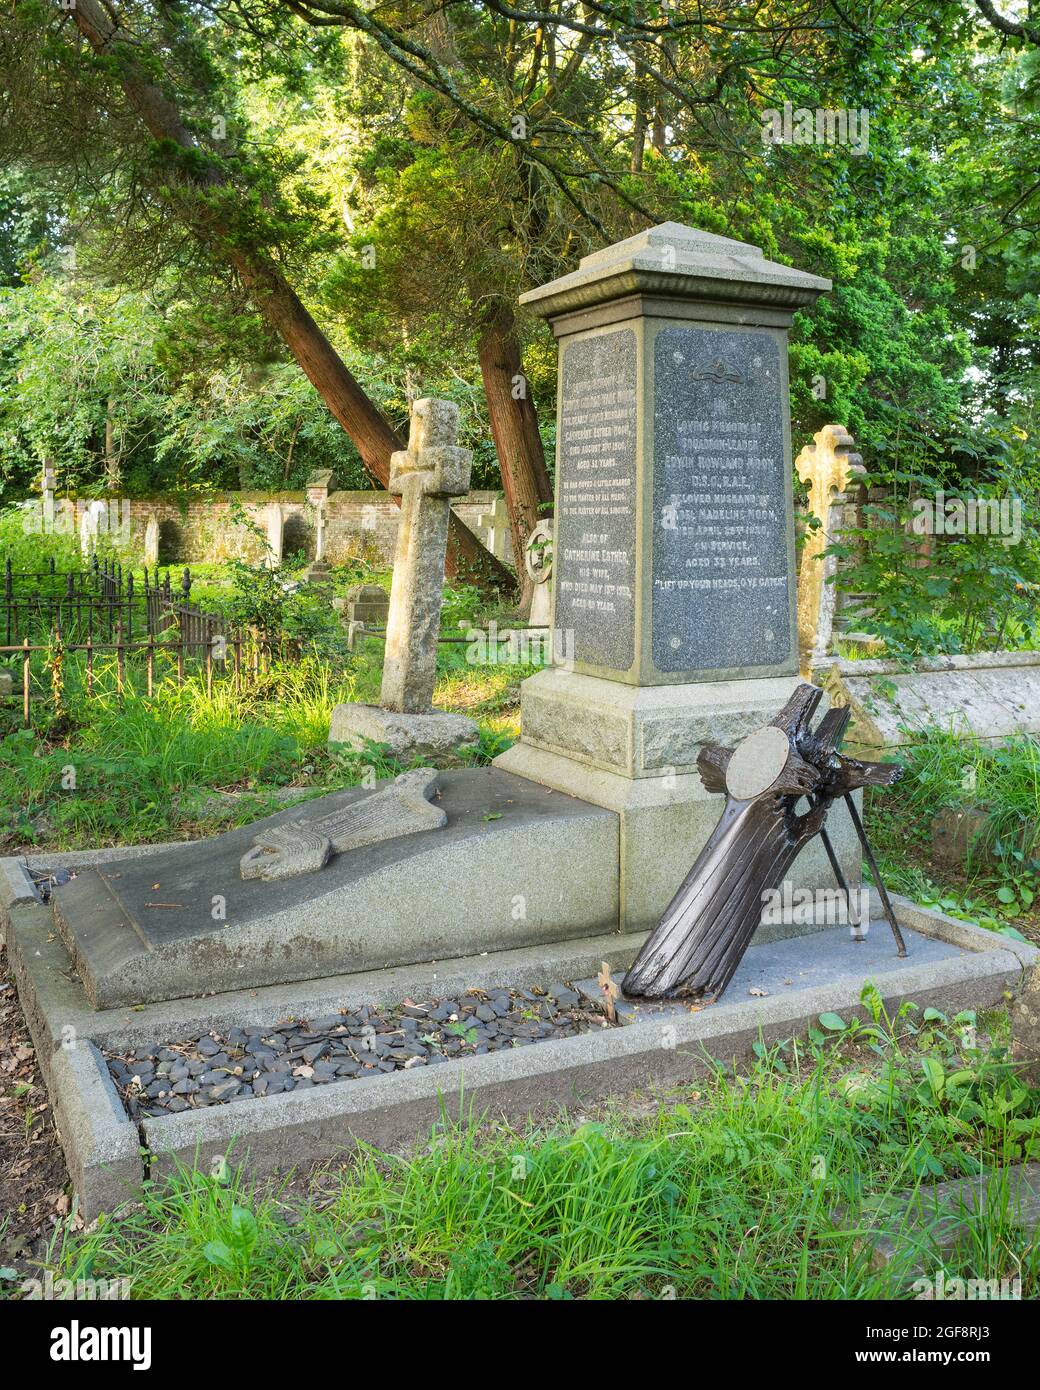 La tombe dans le vieux cimetière de Southampton du chef de l'escadron de la RAF Edwin Rowland Moon DSO. Le propulseur provient de l'avion dans lequel il est mort en 1920. Banque D'Images